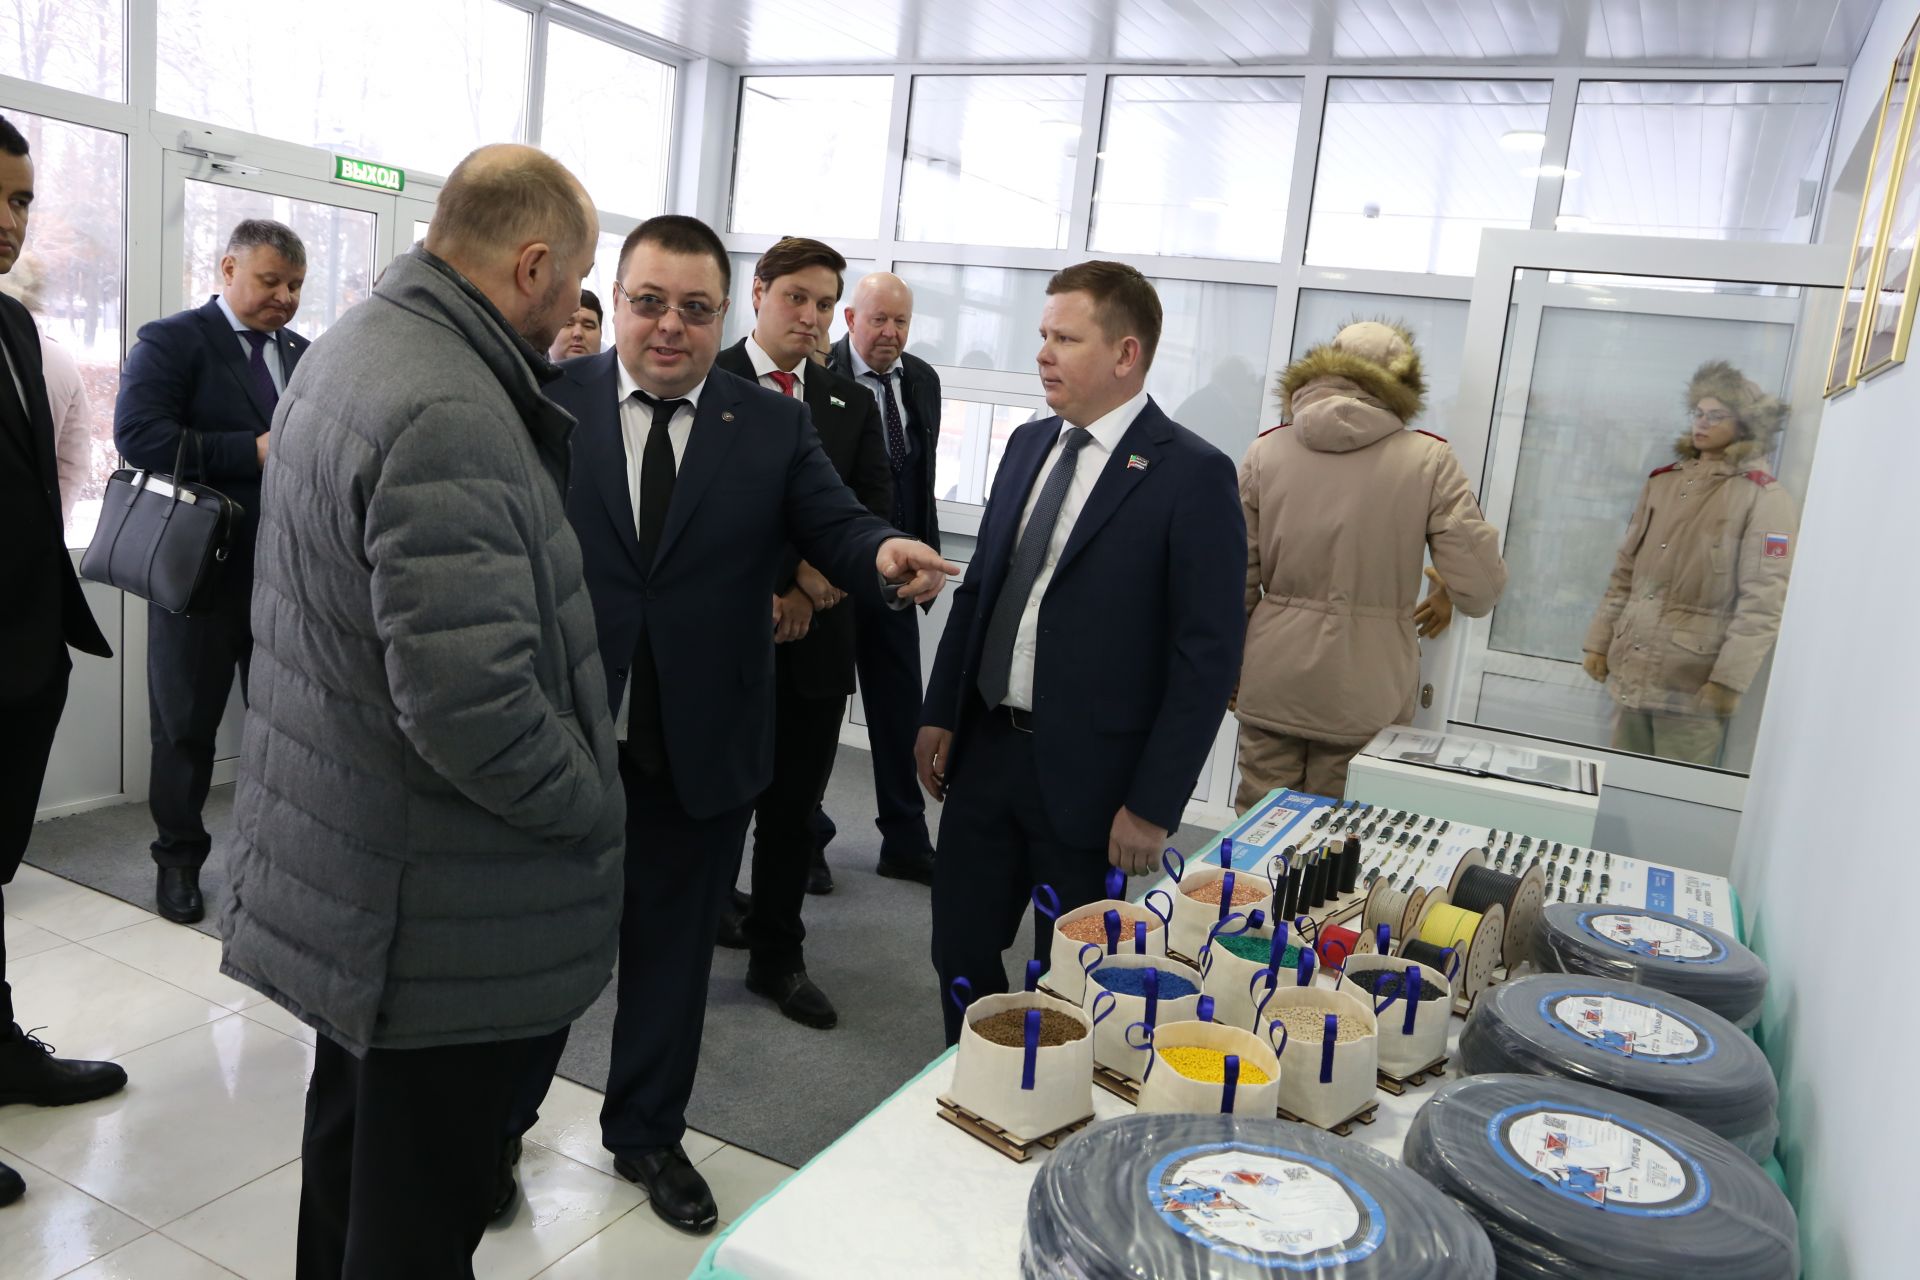 Асгат Сафаров ознакомился с товарами, произведенными в Алексеевском районе